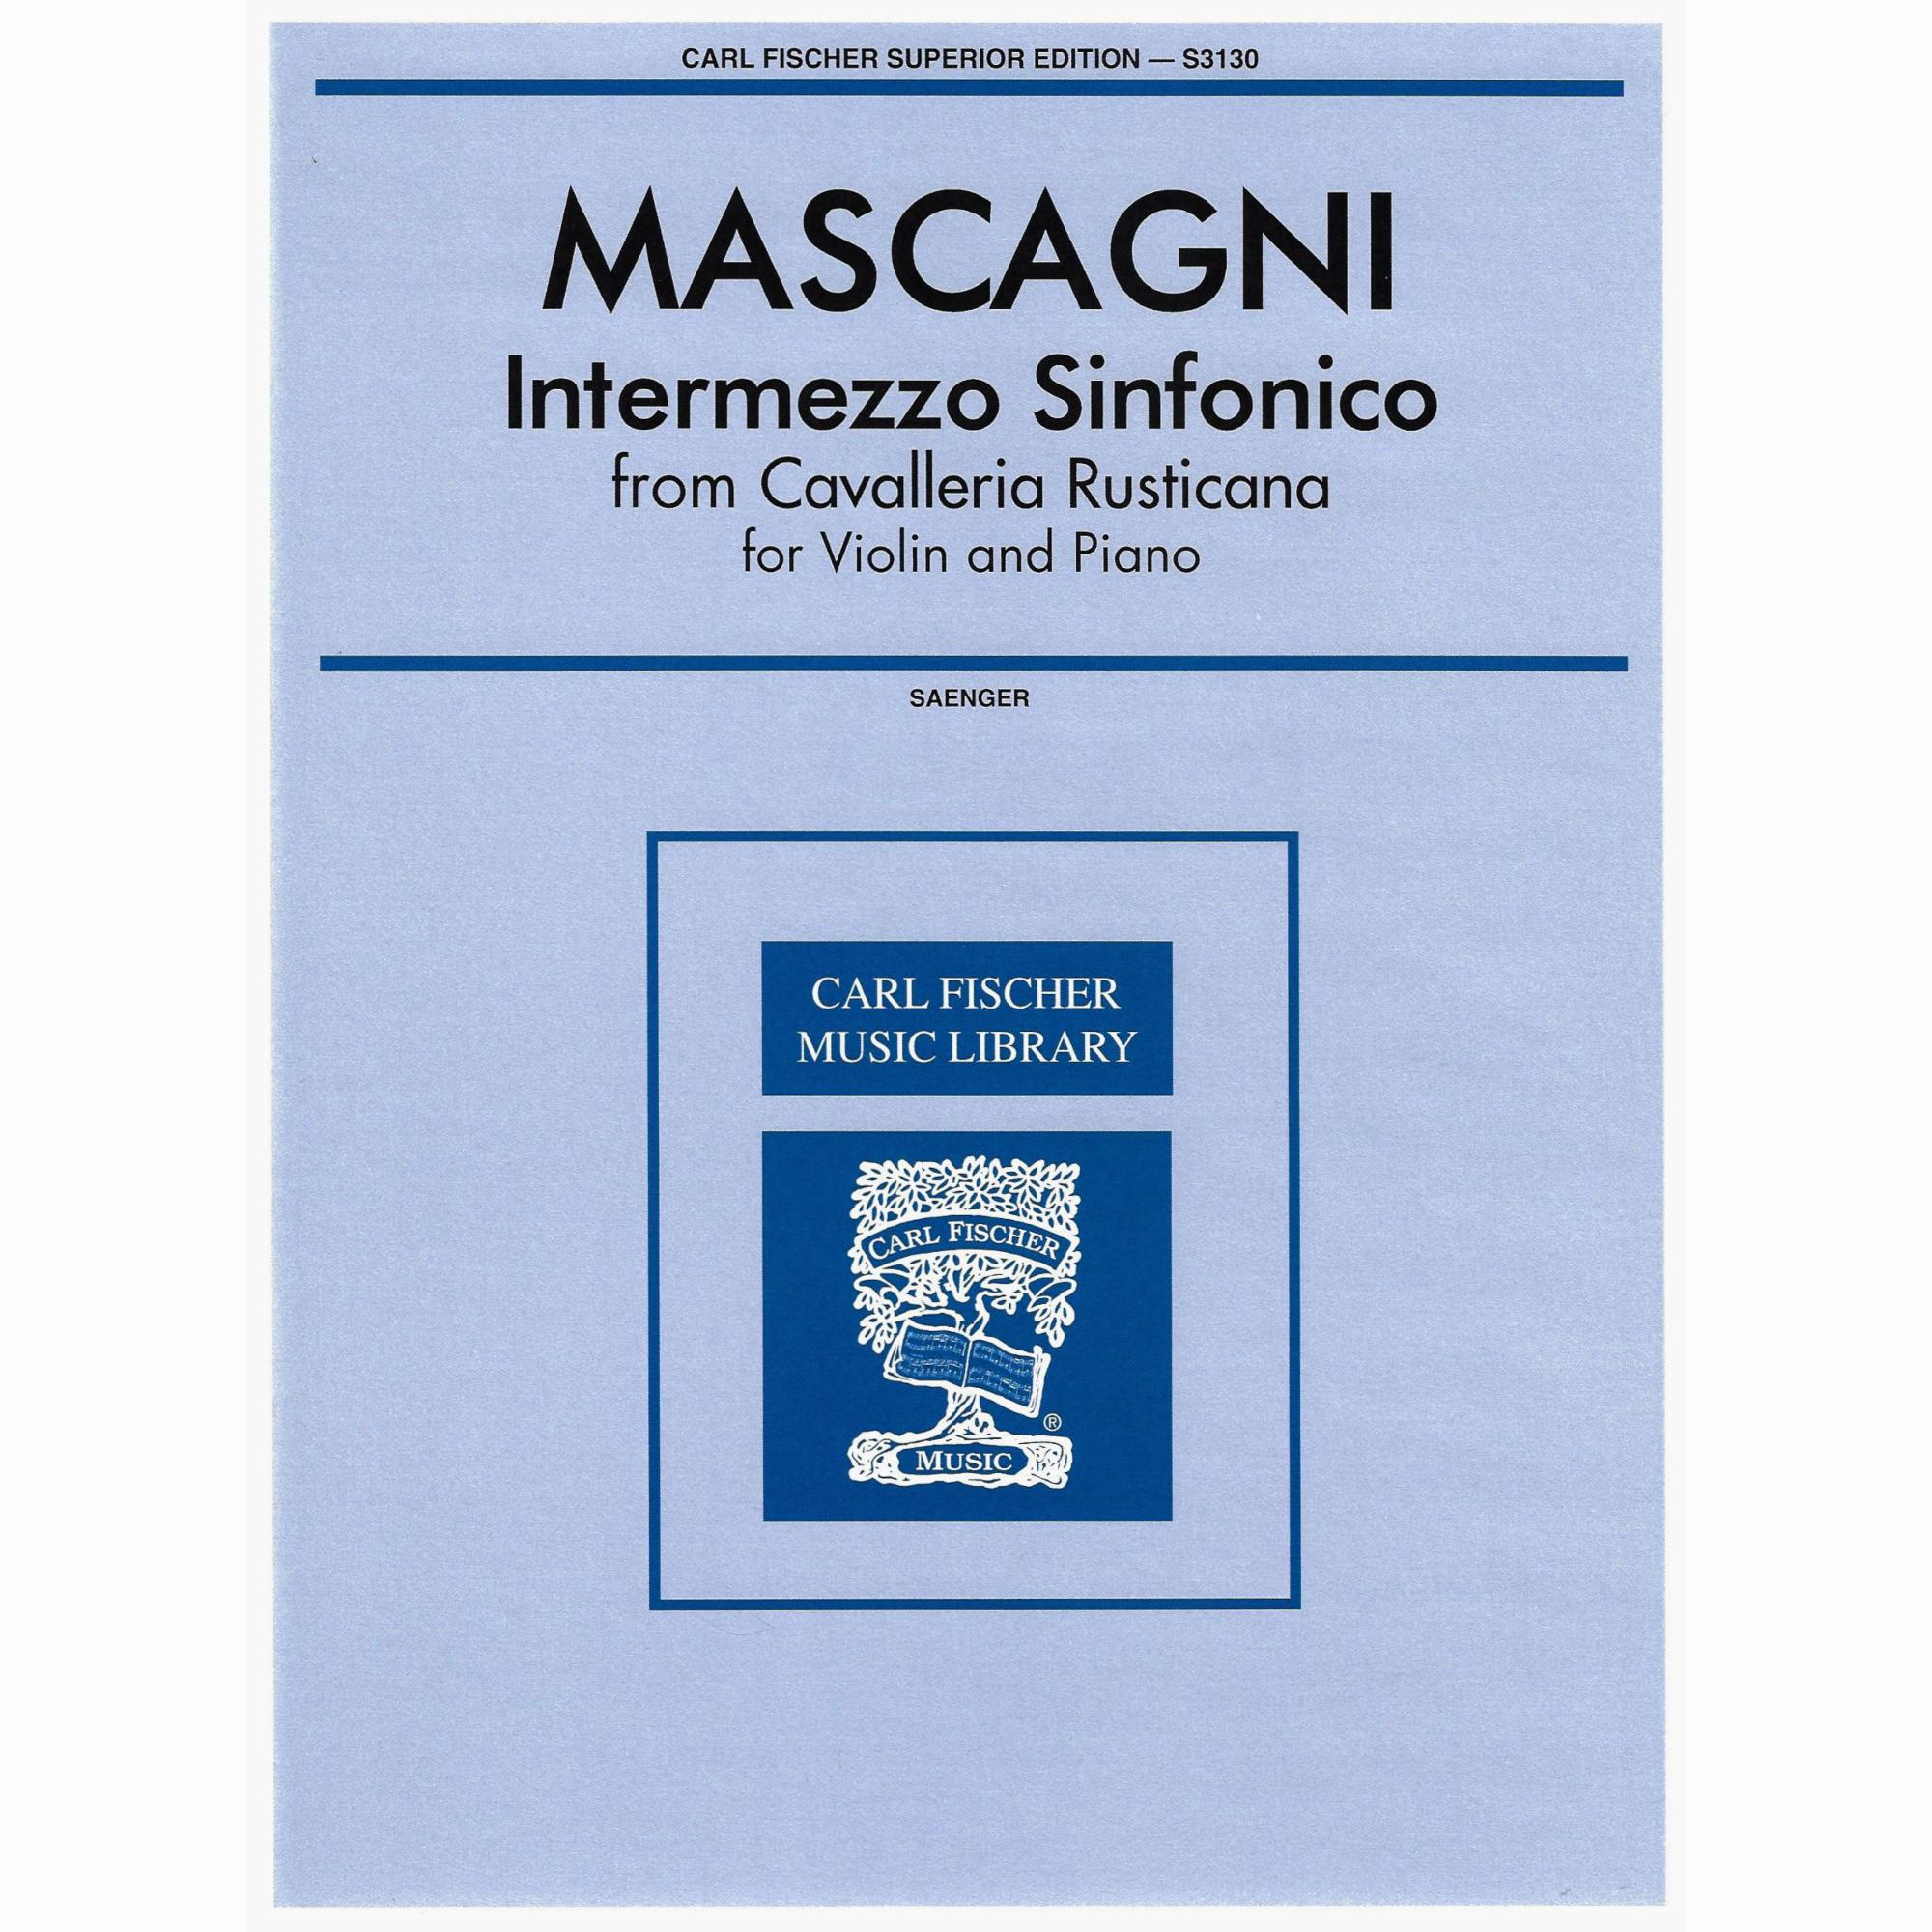 Mascagni -- Intermezzo Sinfonico, from Cavalleria Rusticana for Violin and Piano